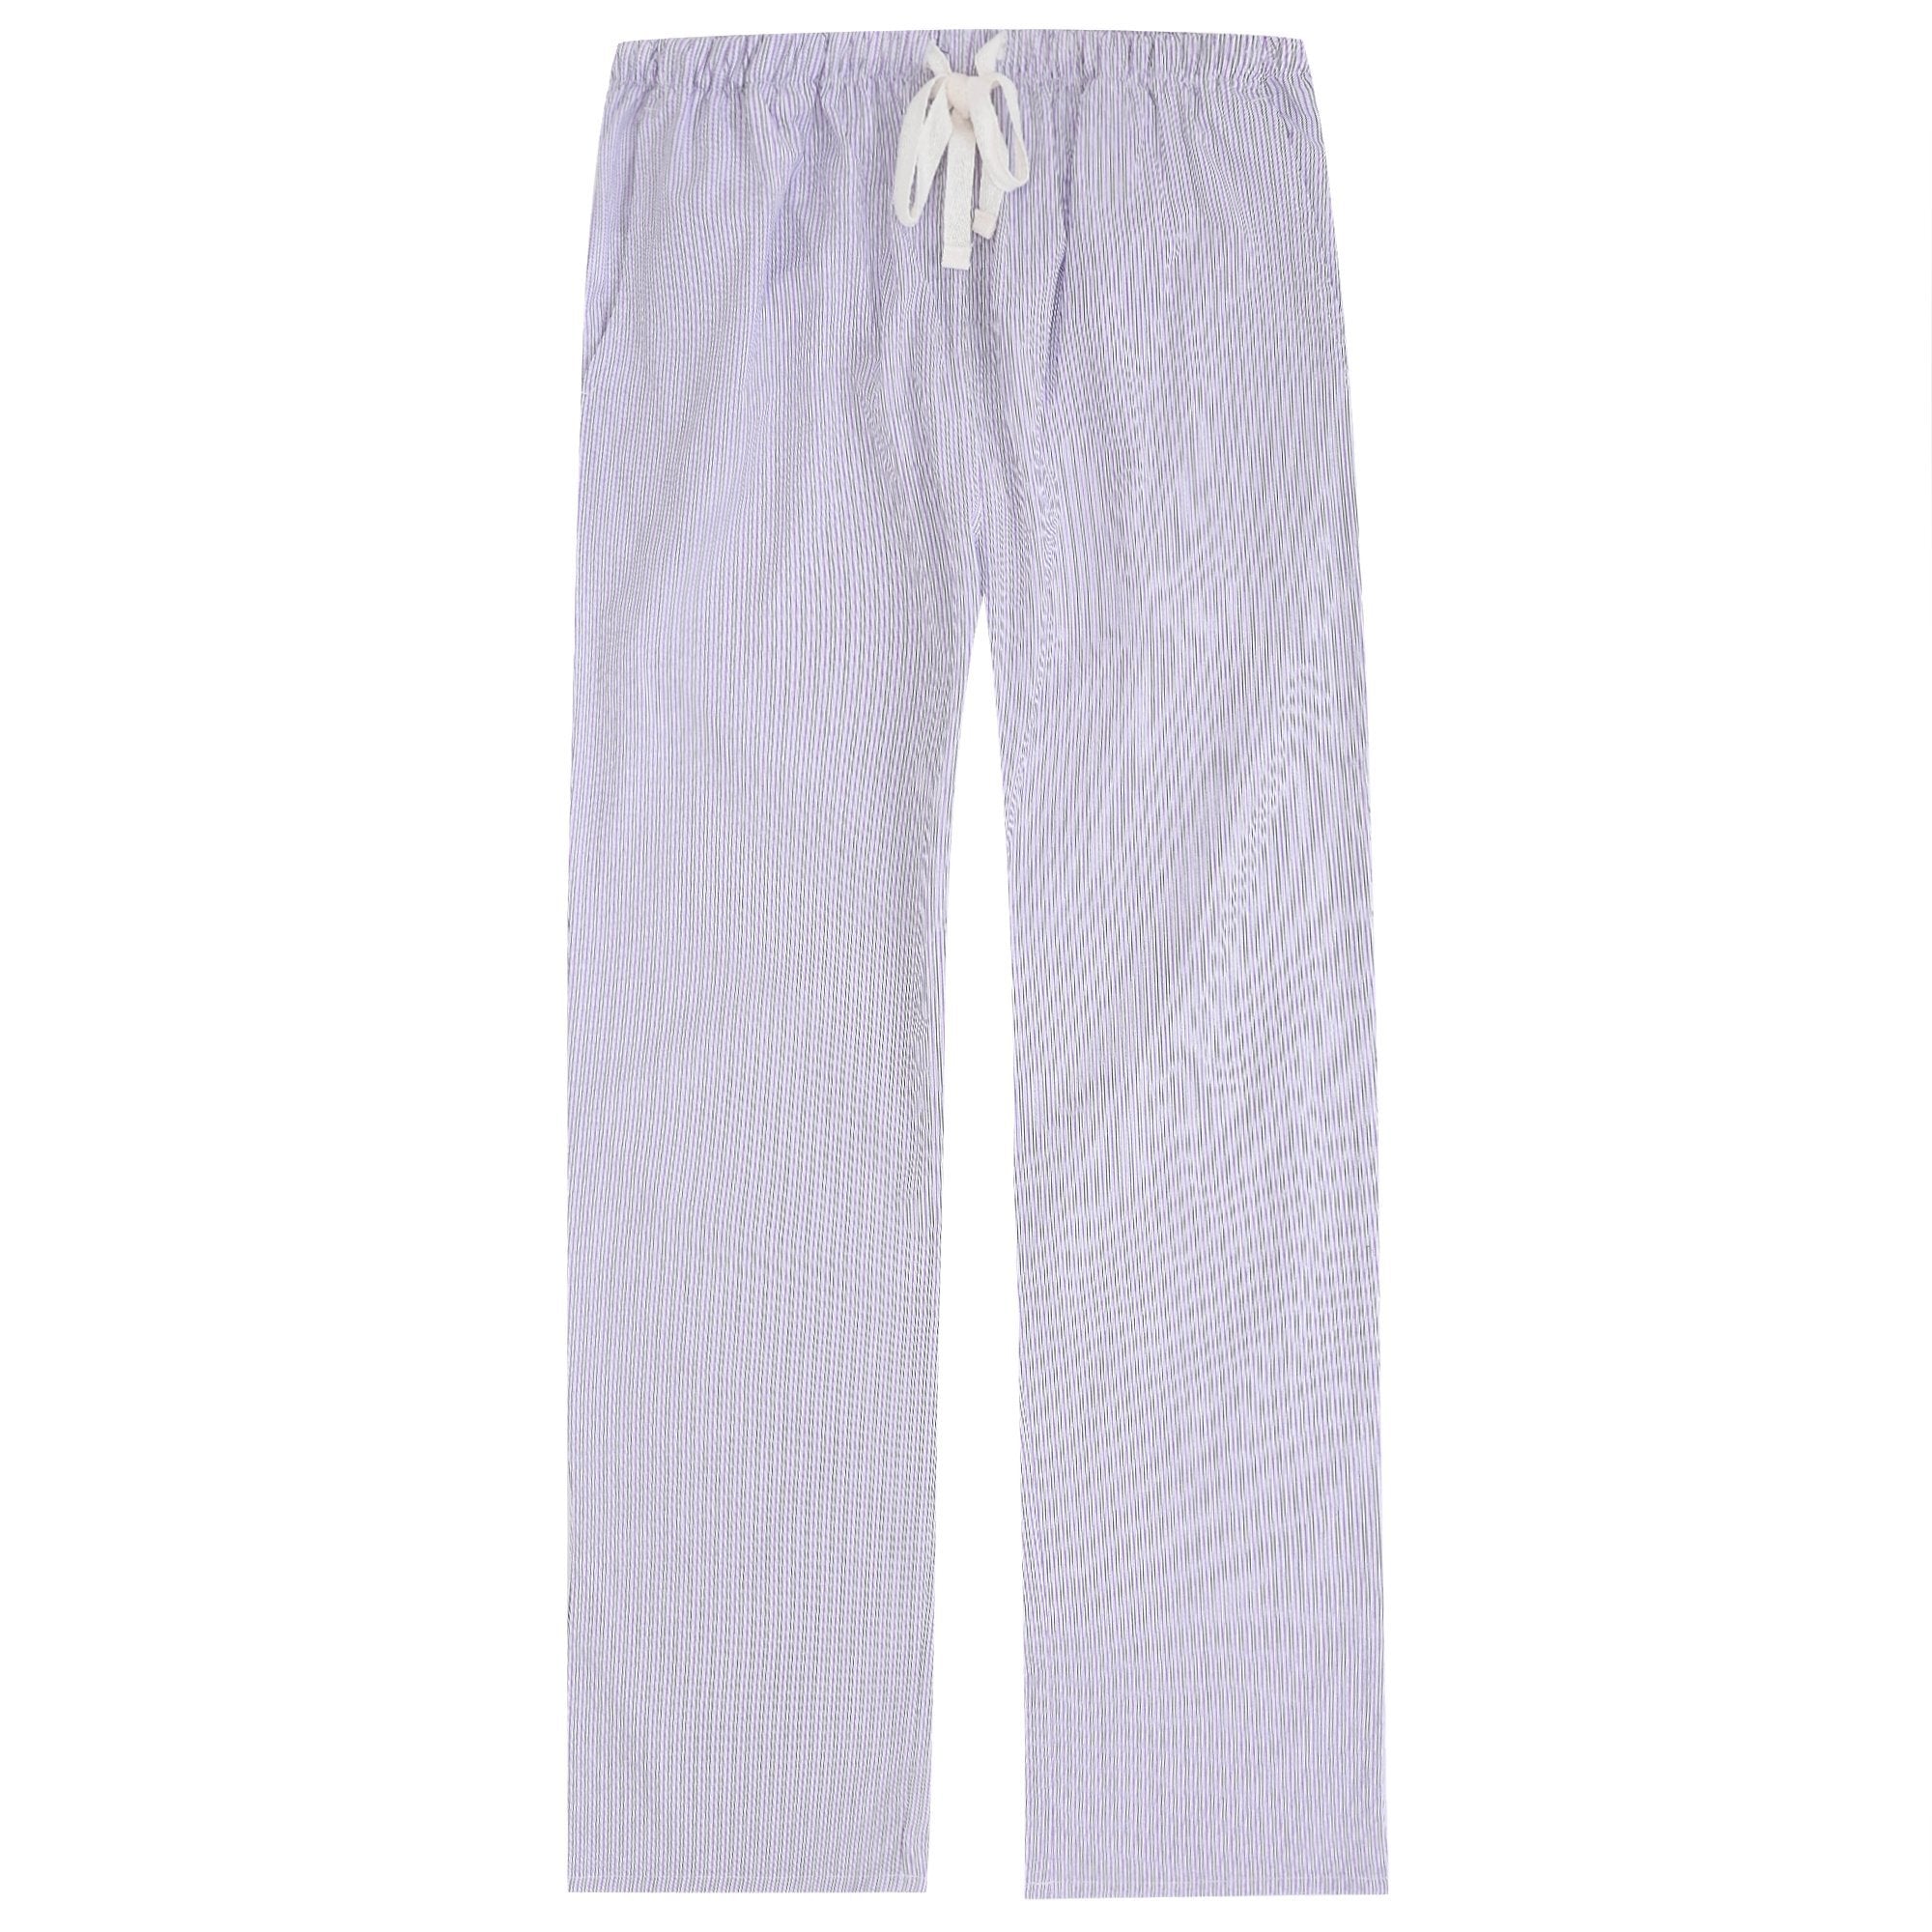 Pajama Pants for Women - 100% Cotton Lounge Pants Women PJ Pants ...